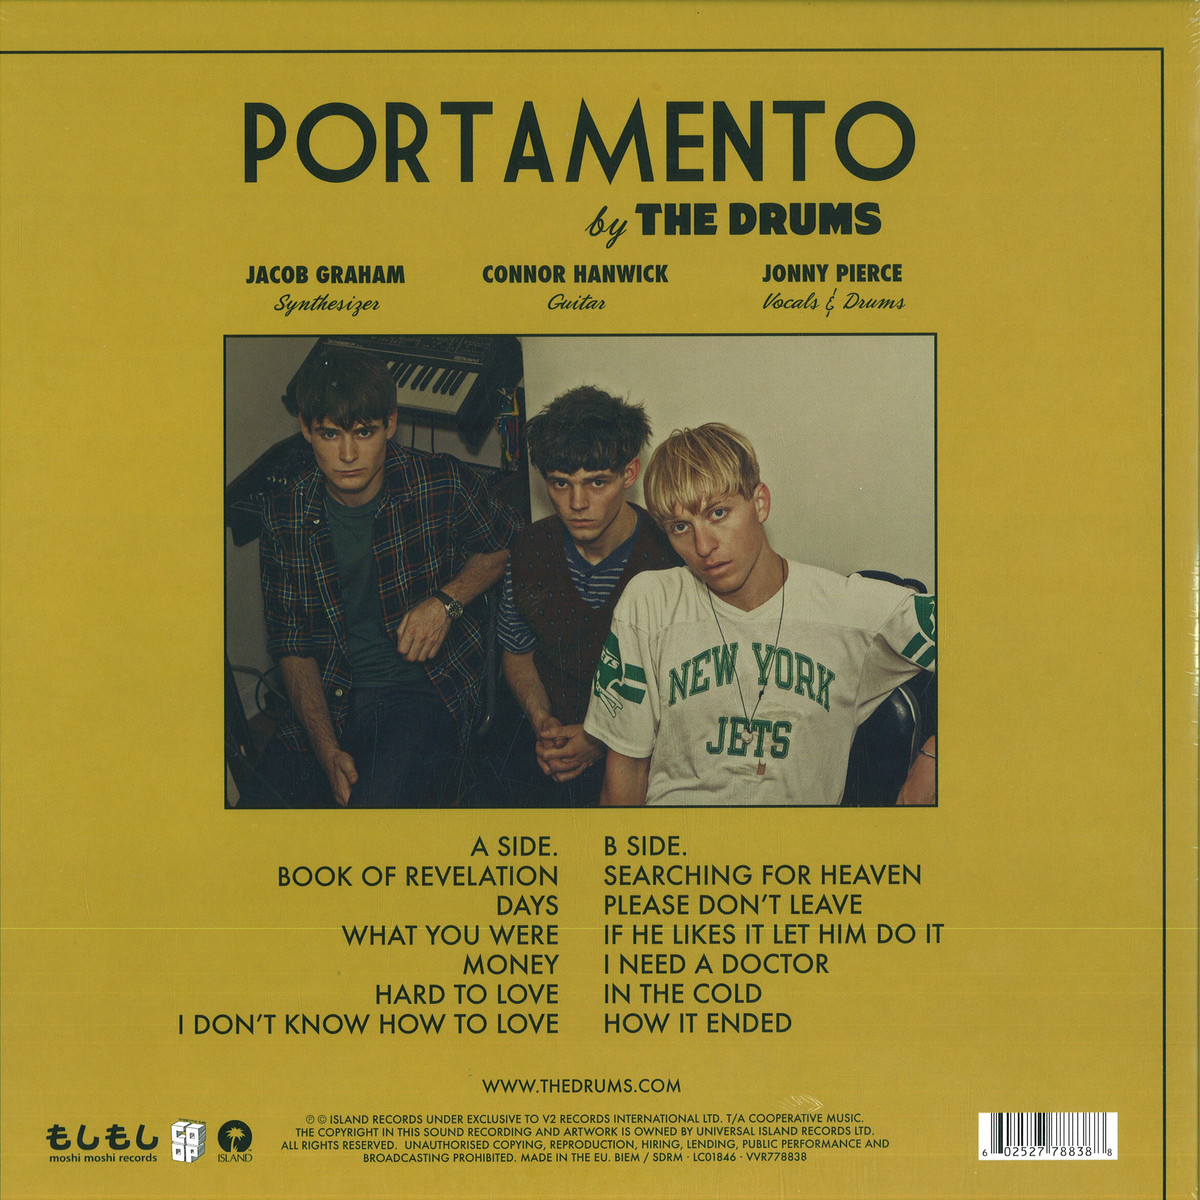 The Drums - Portamento / Polydor Germany 2778838 - Vinyl